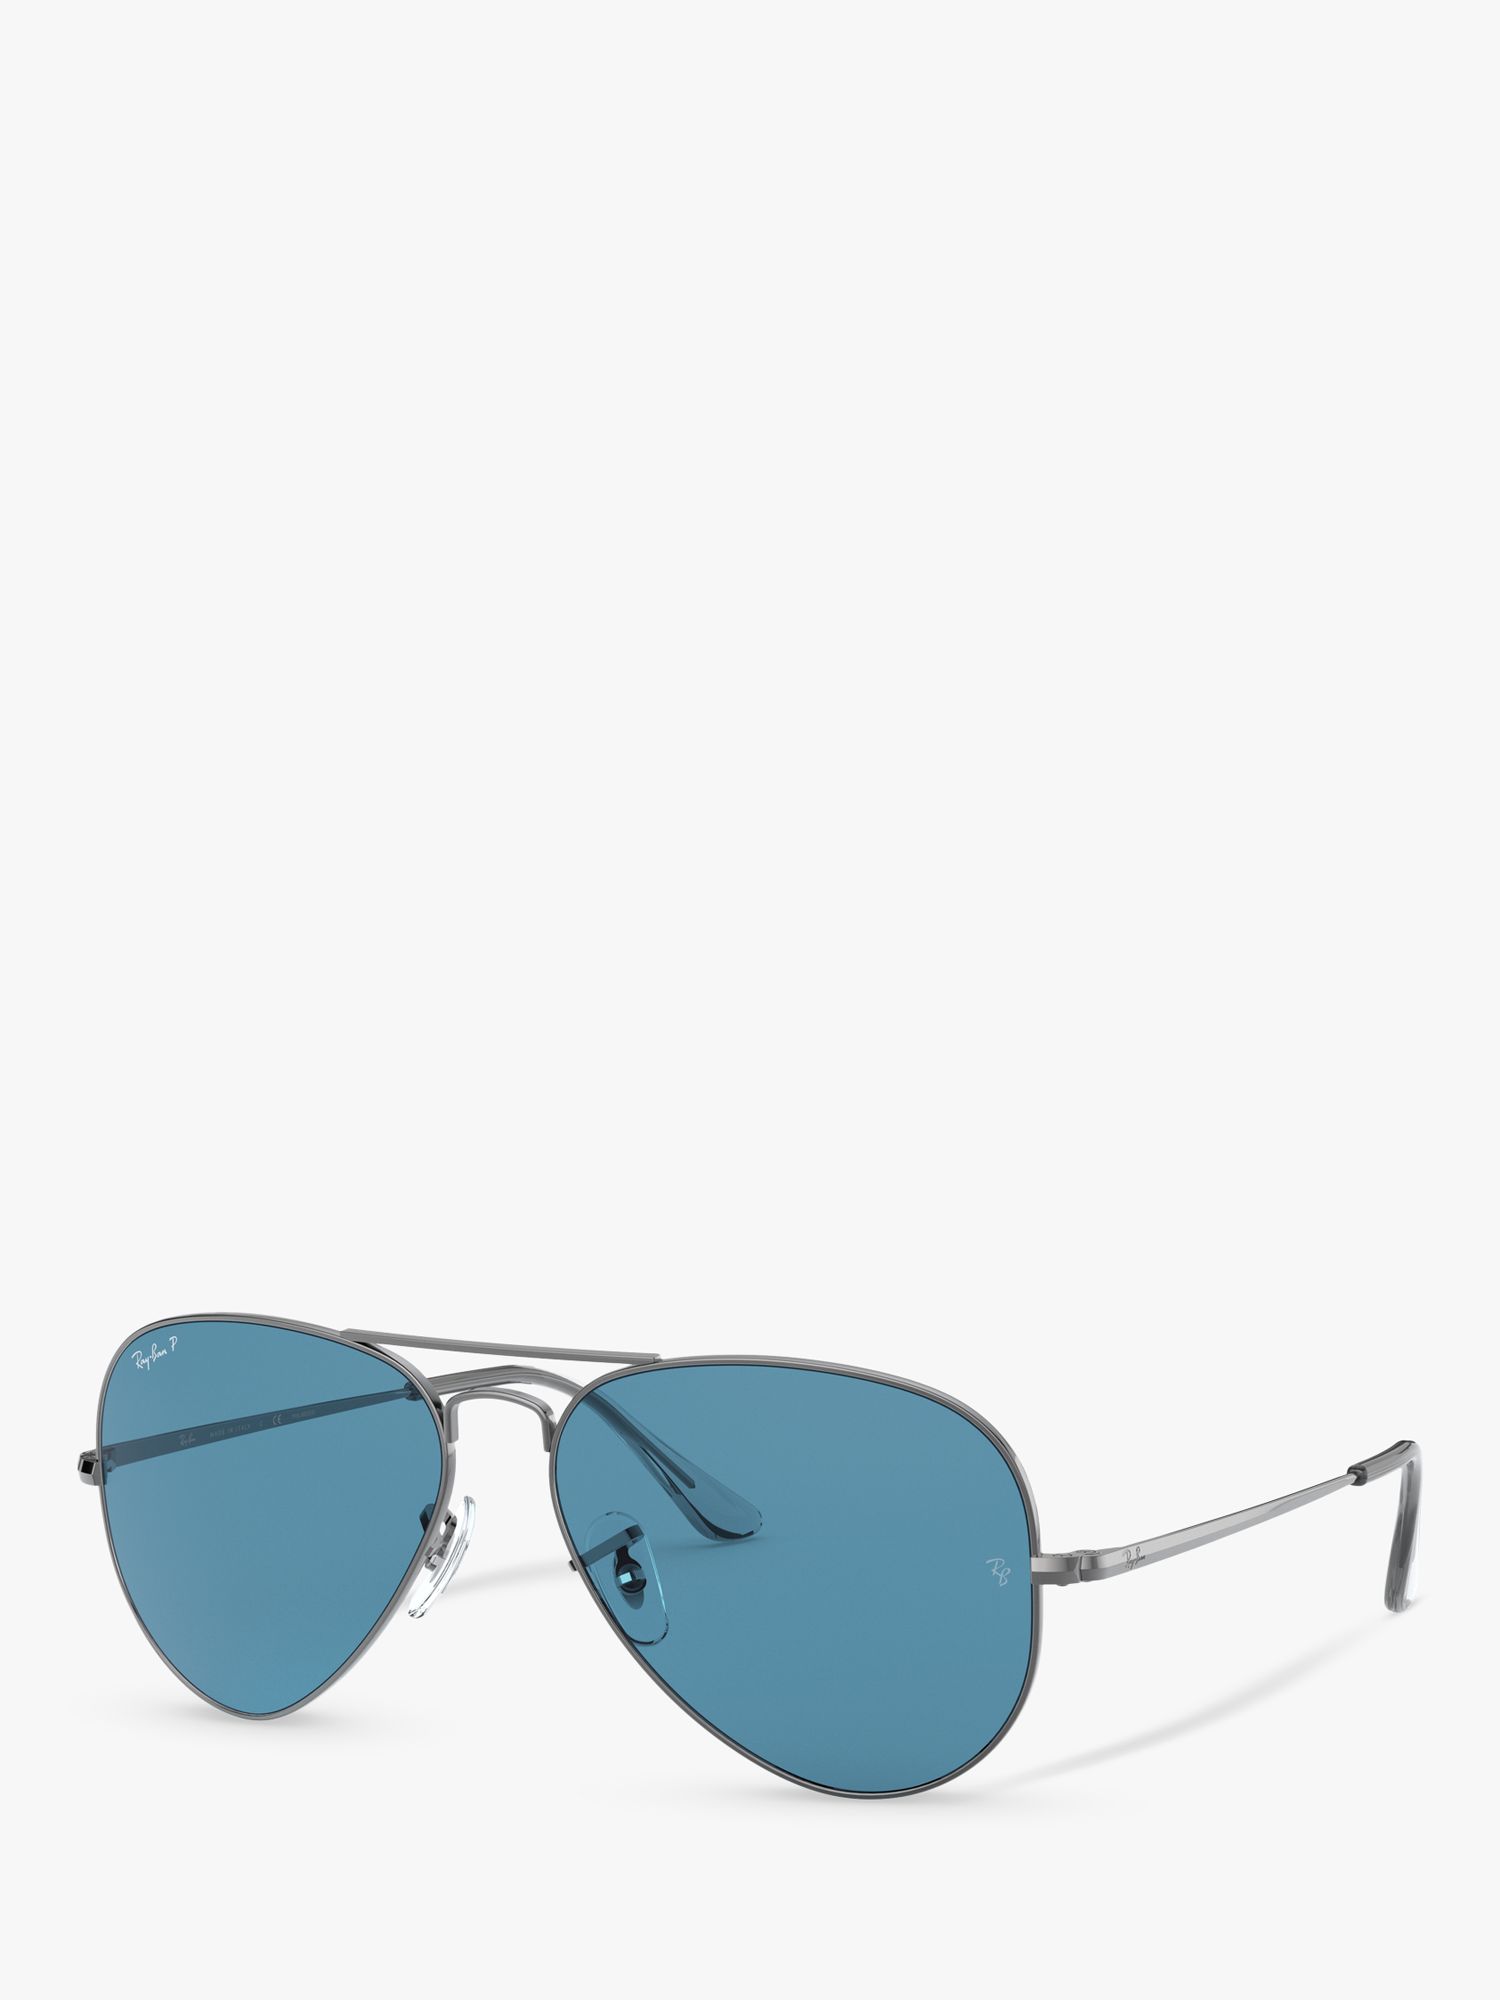 Ray-Ban RB3689 Поляризованные солнцезащитные очки-авиаторы унисекс, бронза цена и фото